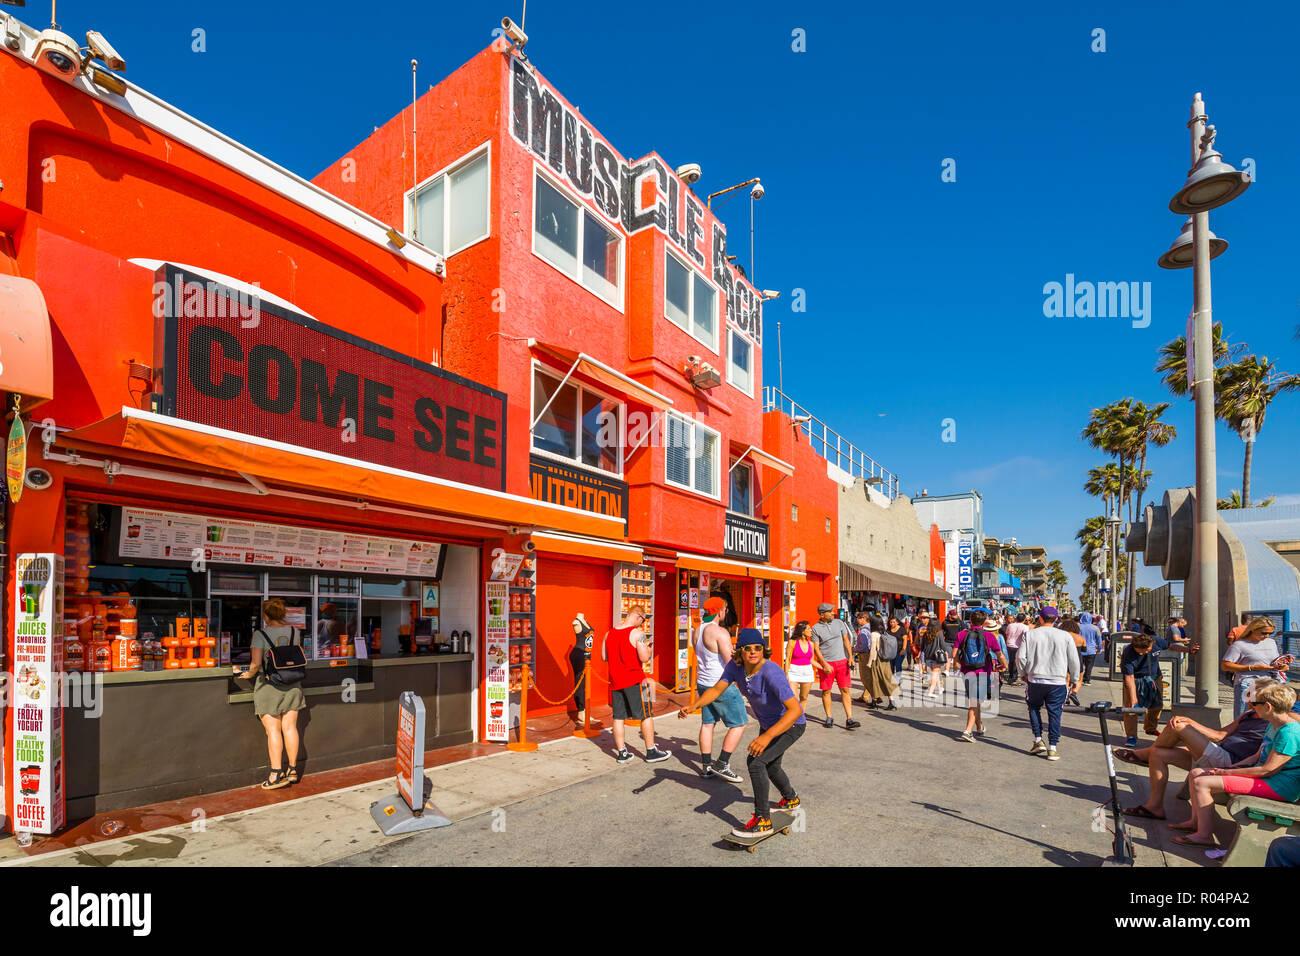 Blick auf die bunten Geschäfte am Ocean Front Walk in Venice Beach, Los Angeles, Kalifornien, Vereinigte Staaten von Amerika, Nordamerika Stockfoto